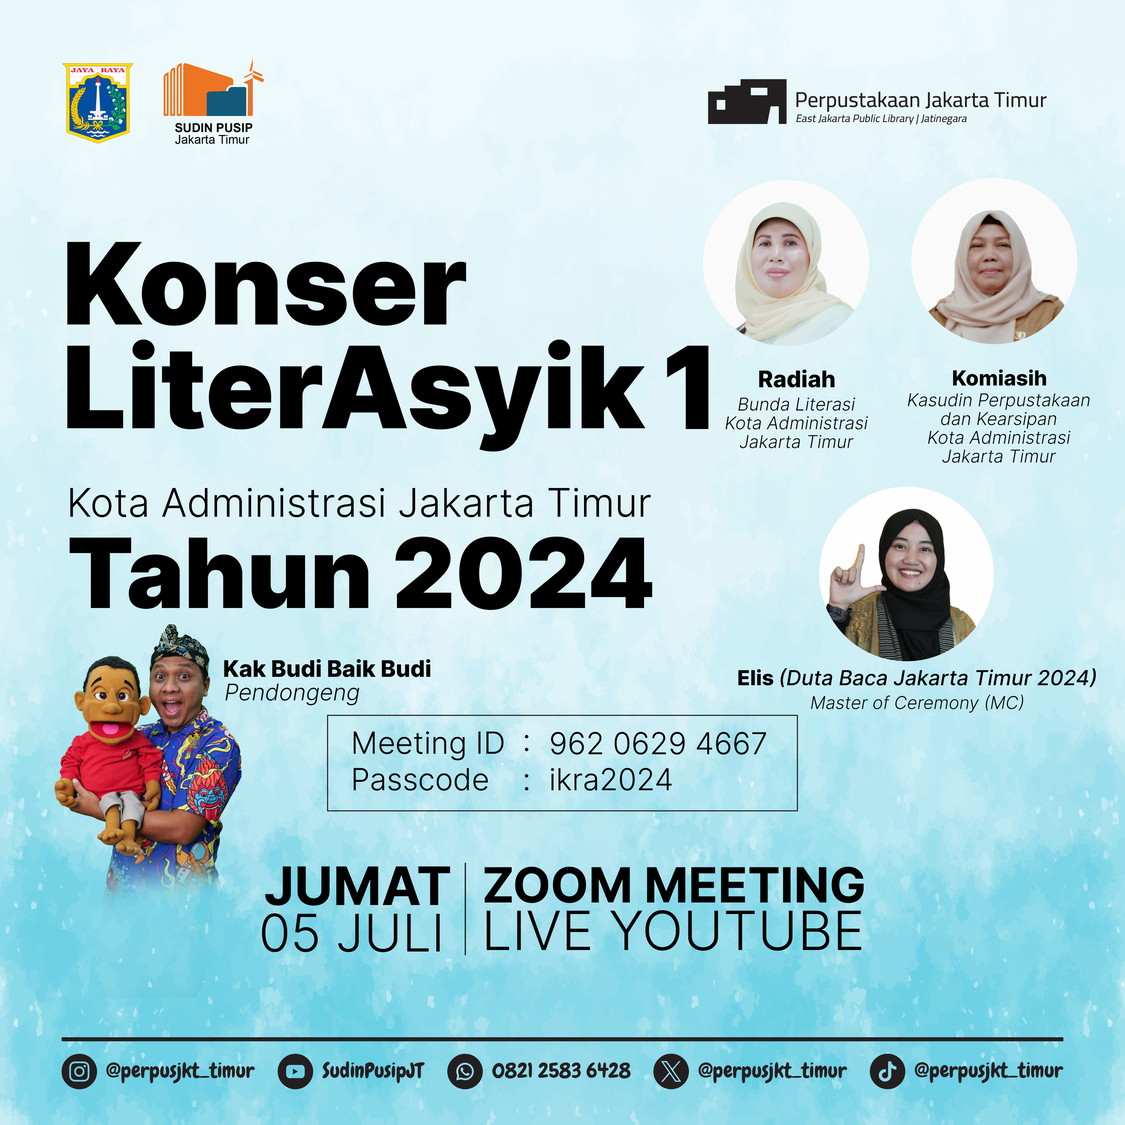 Konser LiterAsyik 1 Kota Administrasi Jakarta Timur Tahun 2024